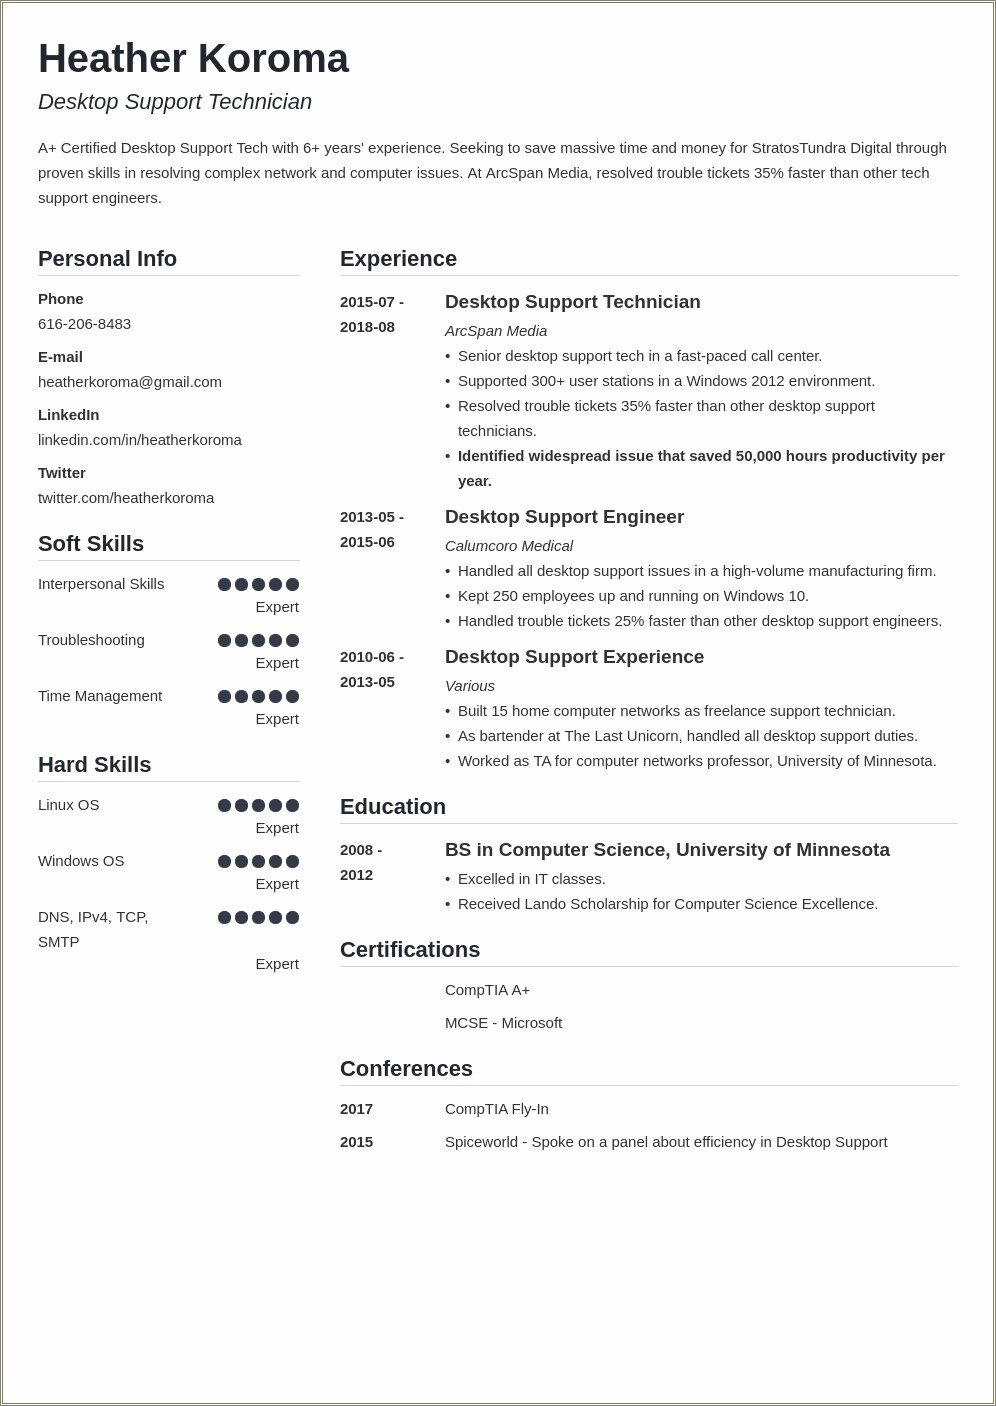 Resume Format For Desktop Support Engineer Free Download